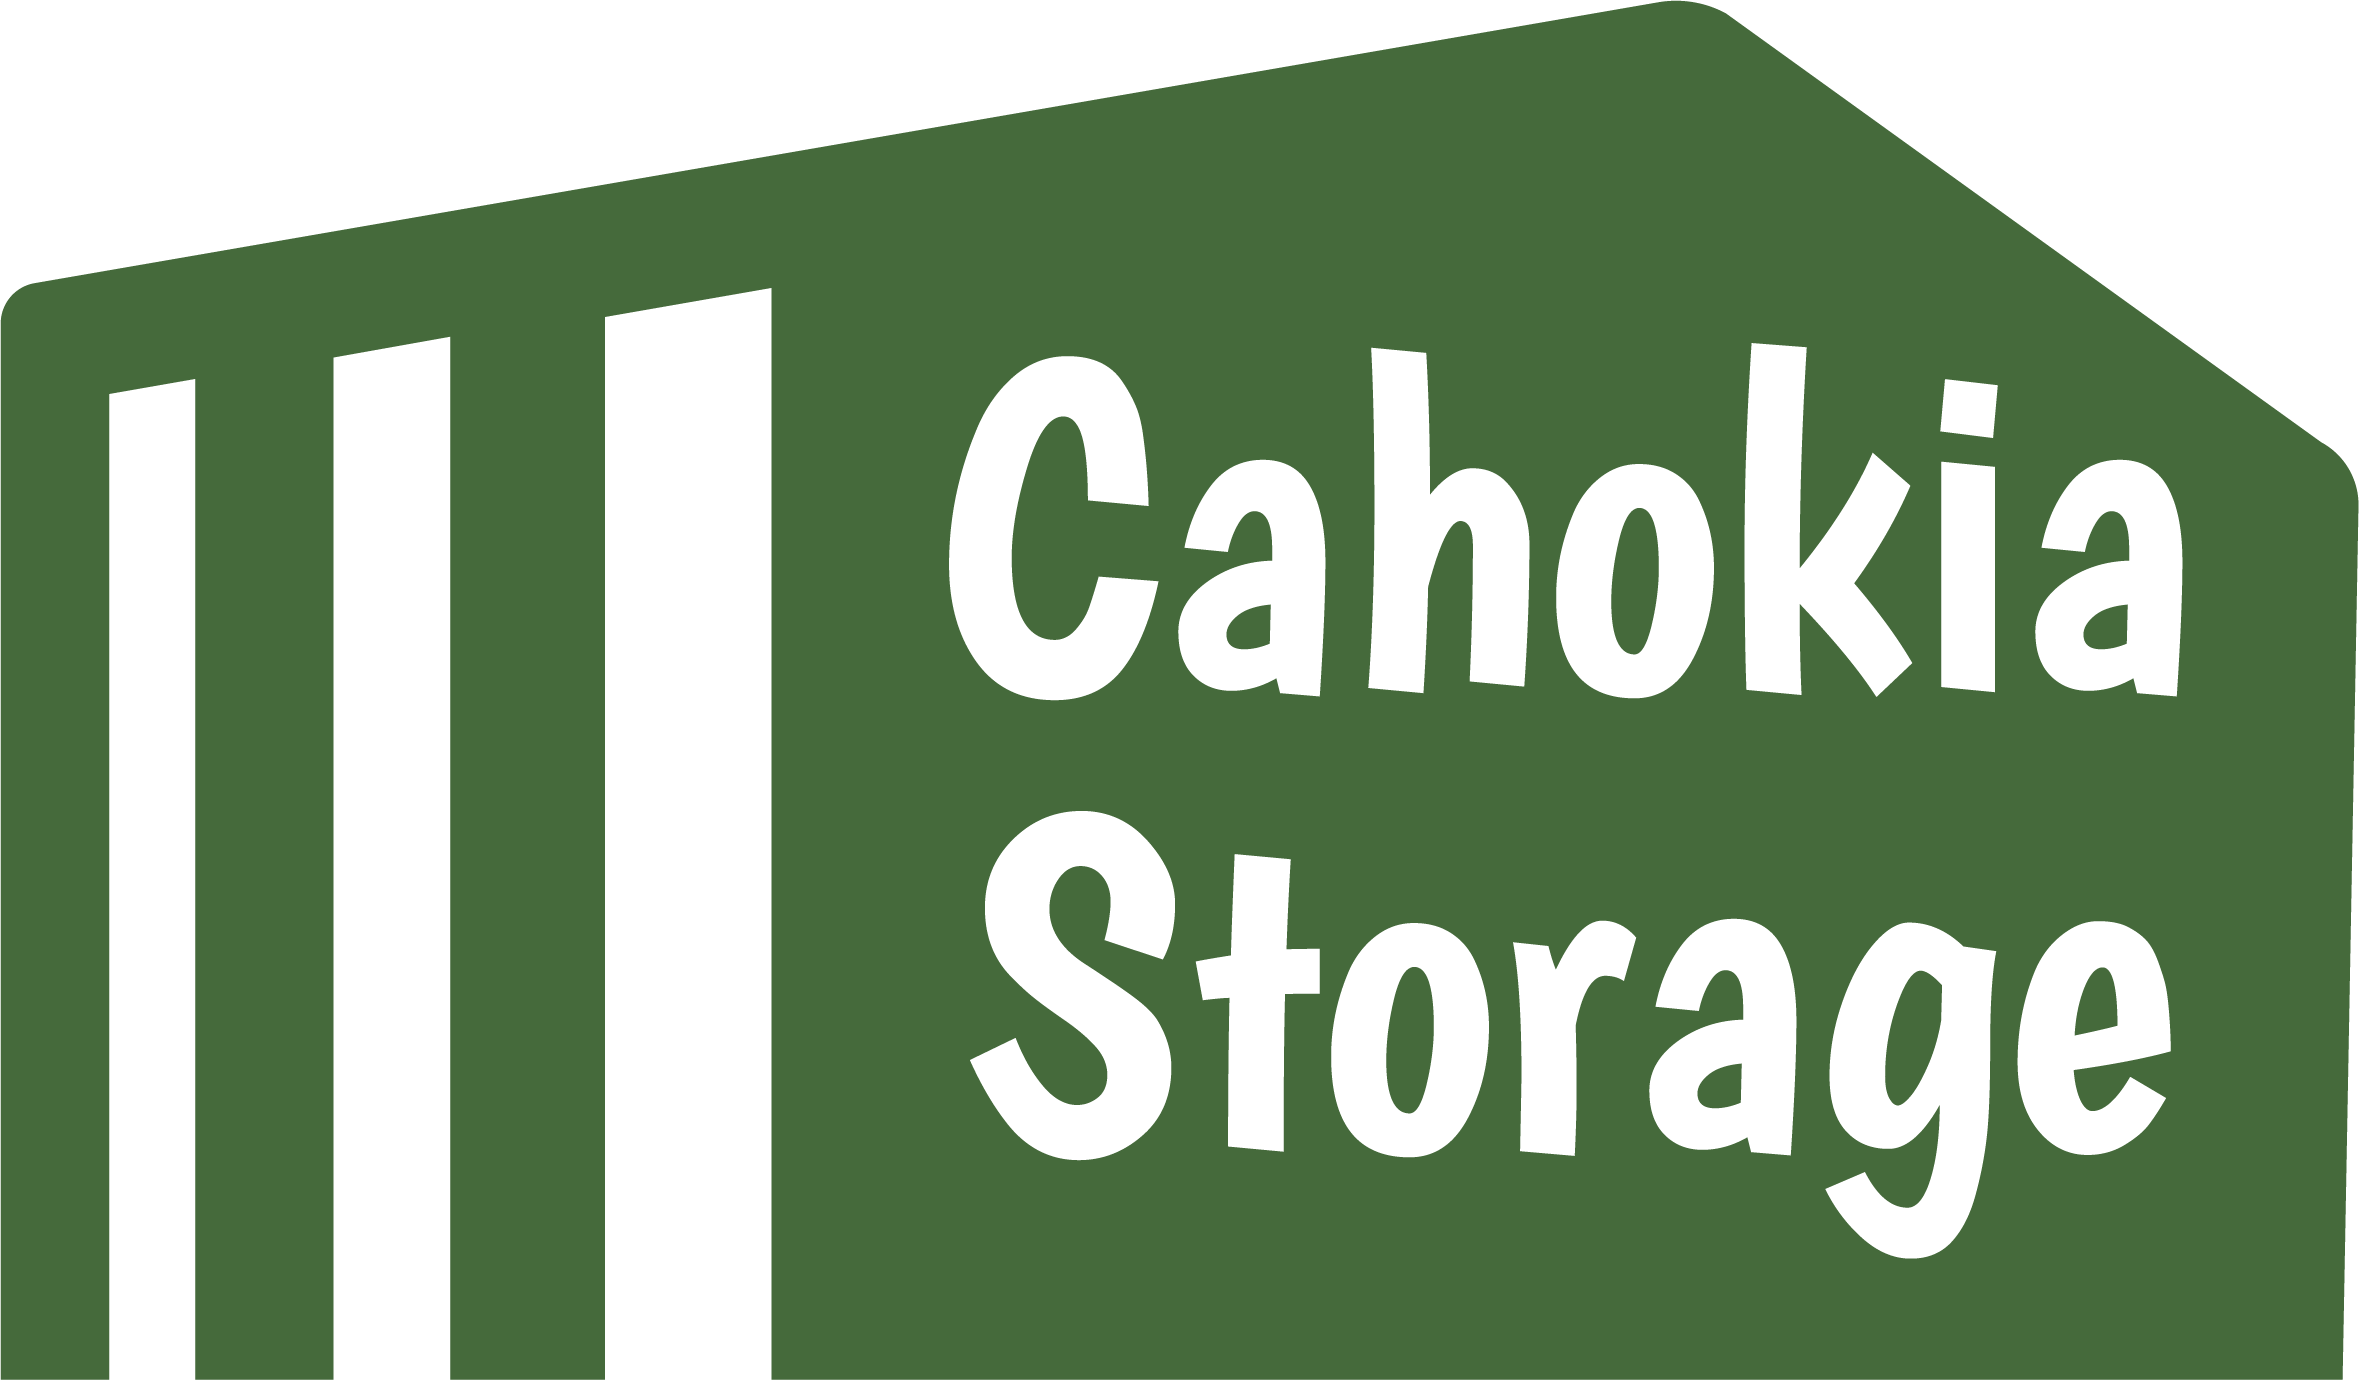 Cahokia Storage Center